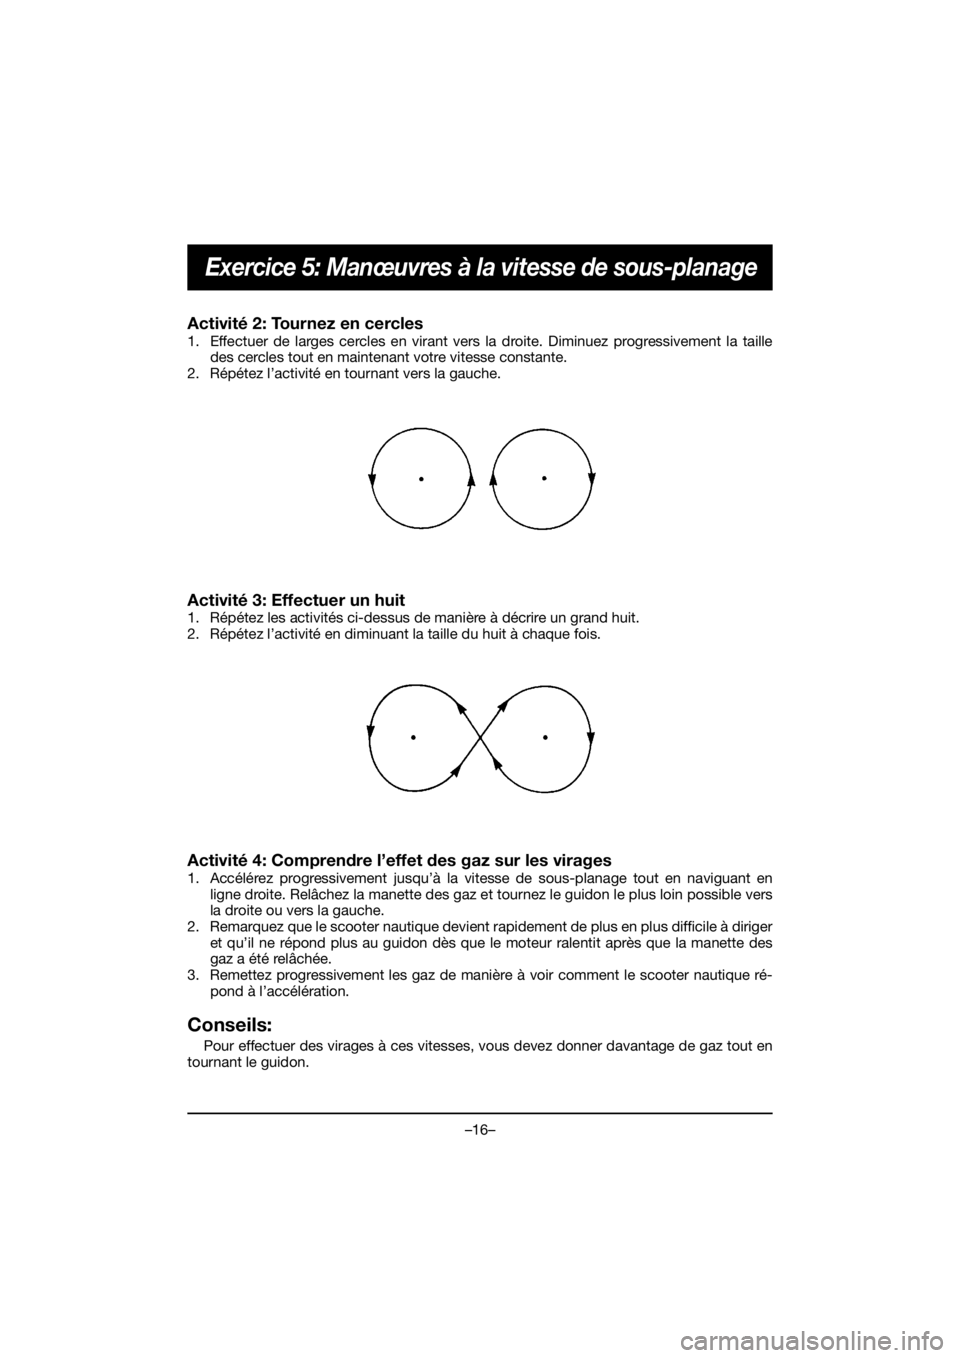 YAMAHA EX SPORT 2020  Manuale duso (in Italian) –16–
Exercice 5: Manœuvres à la vitesse de sous-planage
Activité 2: Tournez en cercles 
1. Effectuer de larges cercles en virant vers la droite. Diminuez progressivement la taille
des cercles t